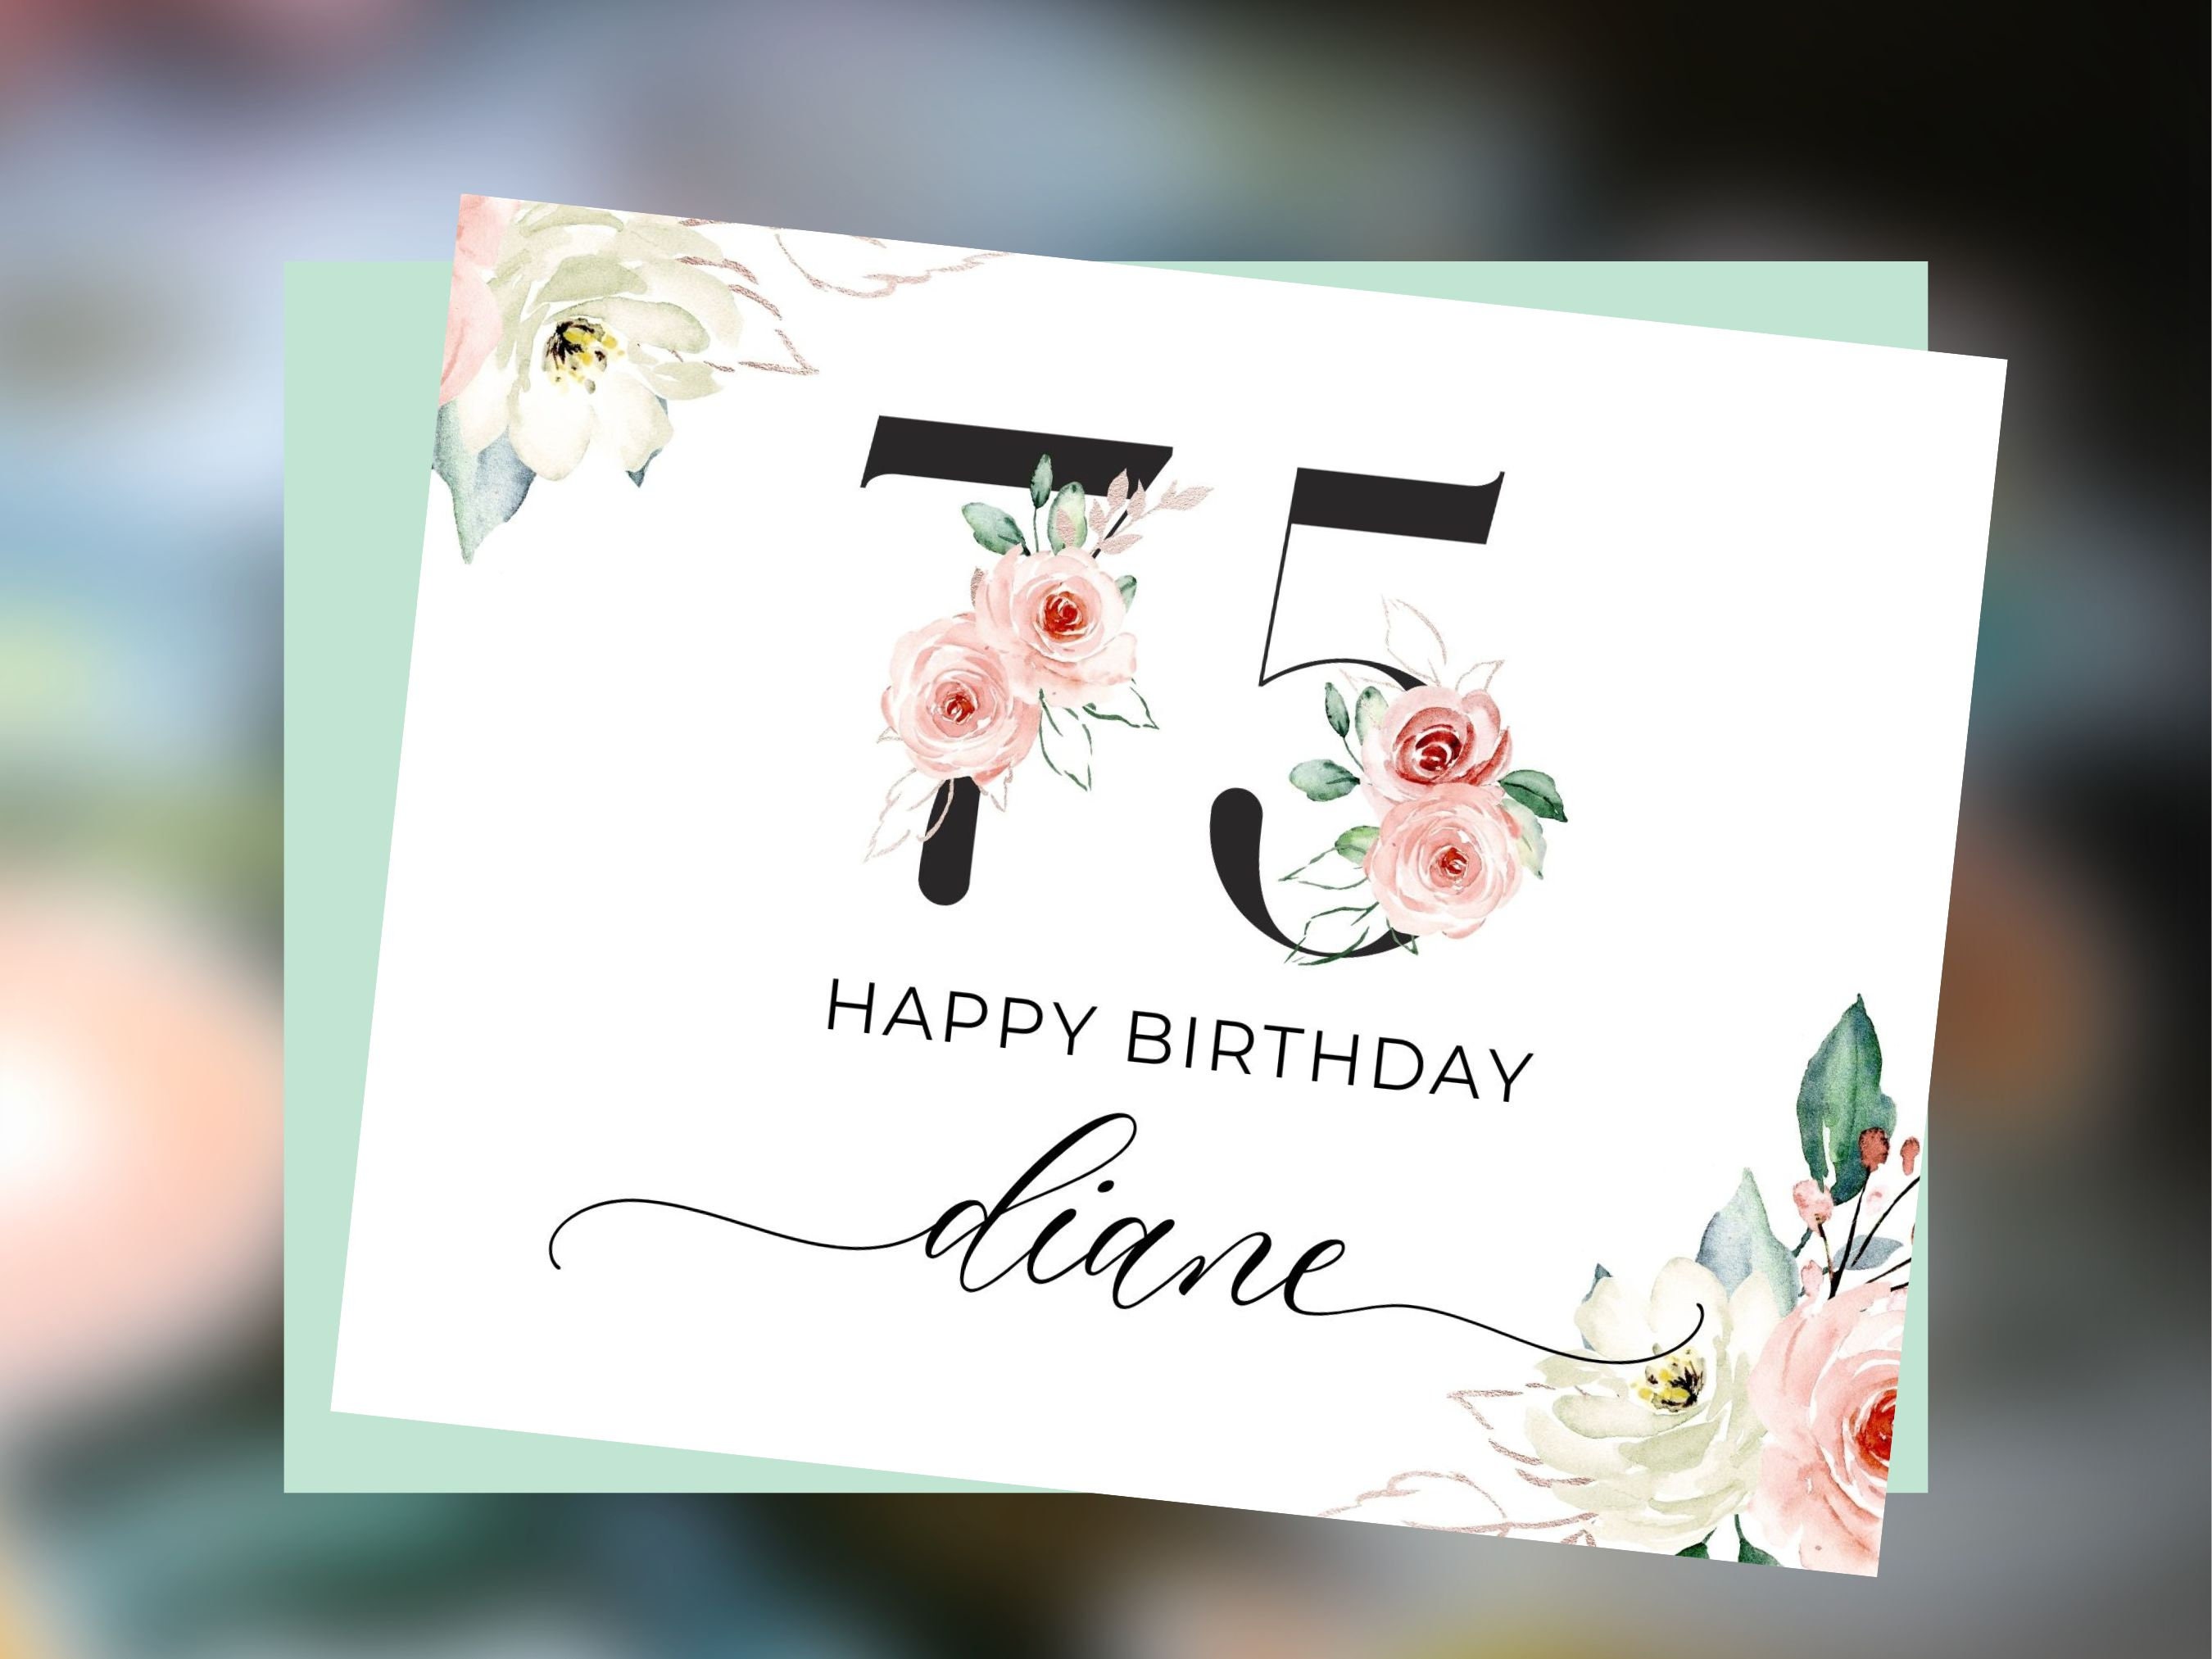 Cricut Joy Cutaway Card SVG, Happy Birthday Cutaway Card SVG, Greeting Card  SVG 